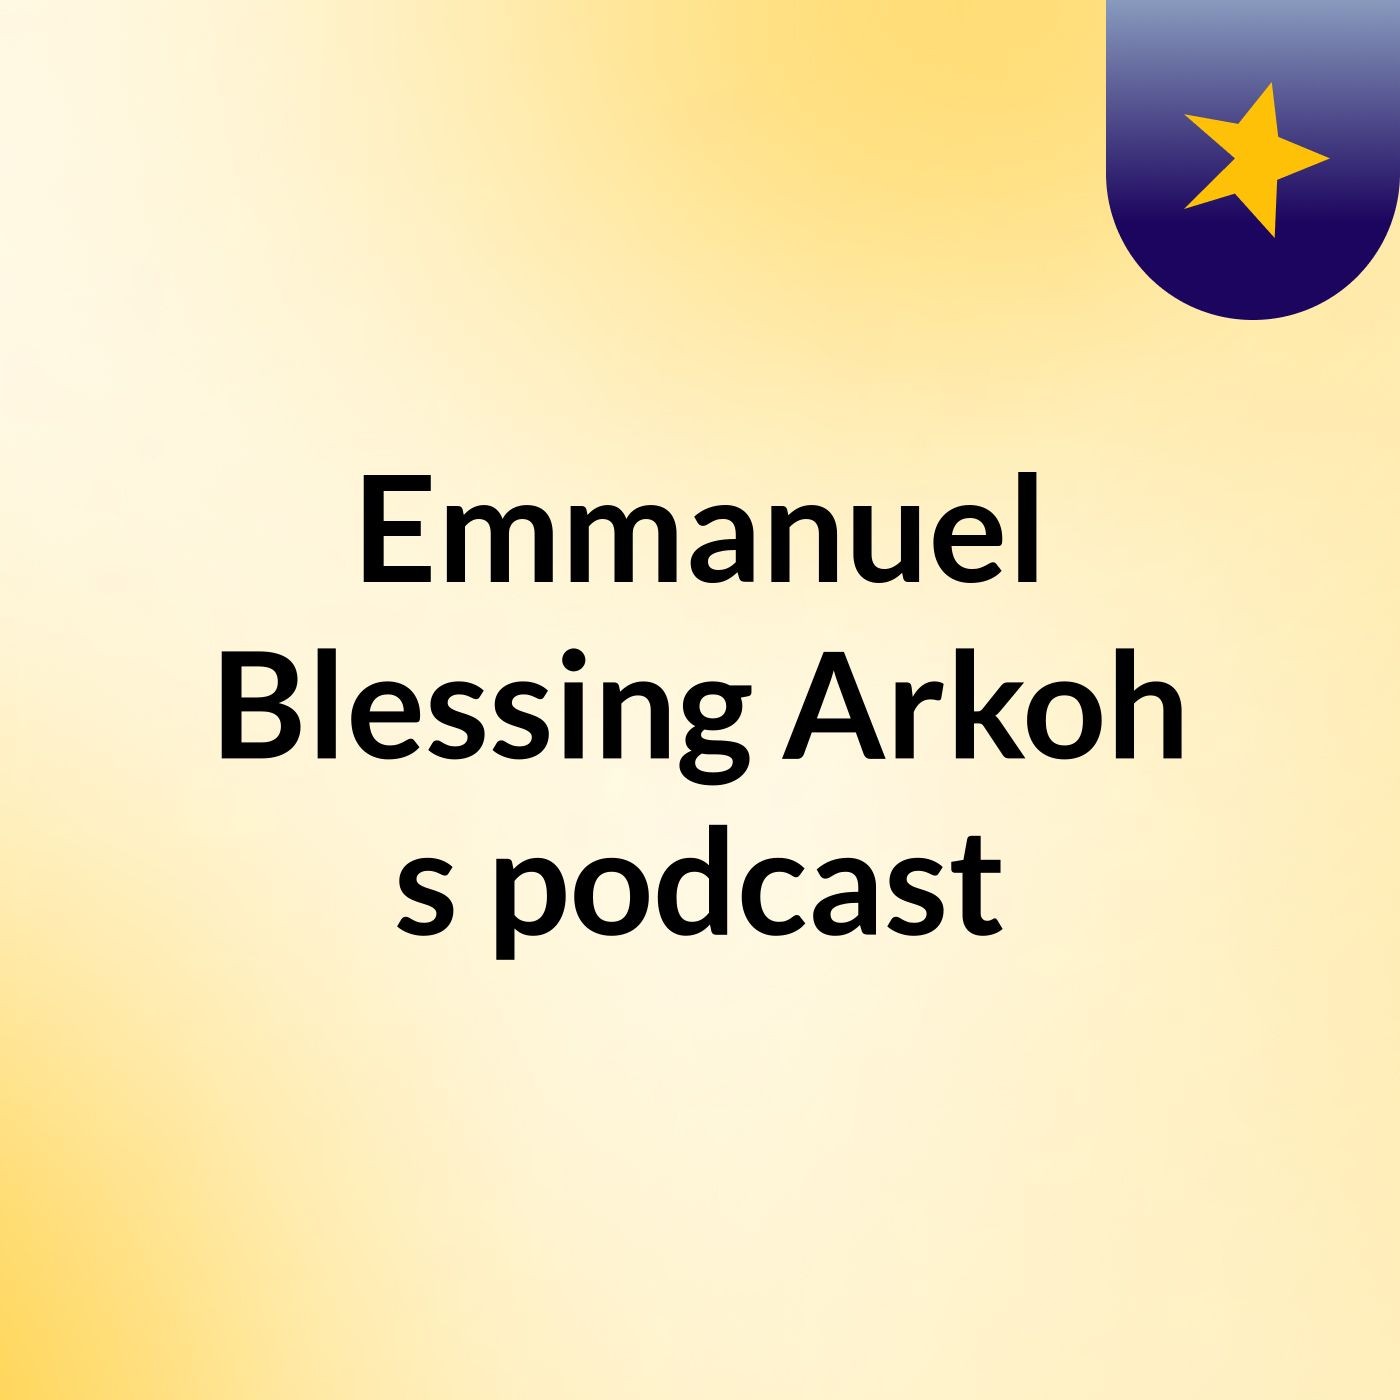 Episode 9 - Emmanuel Blessing Arkoh's podcast